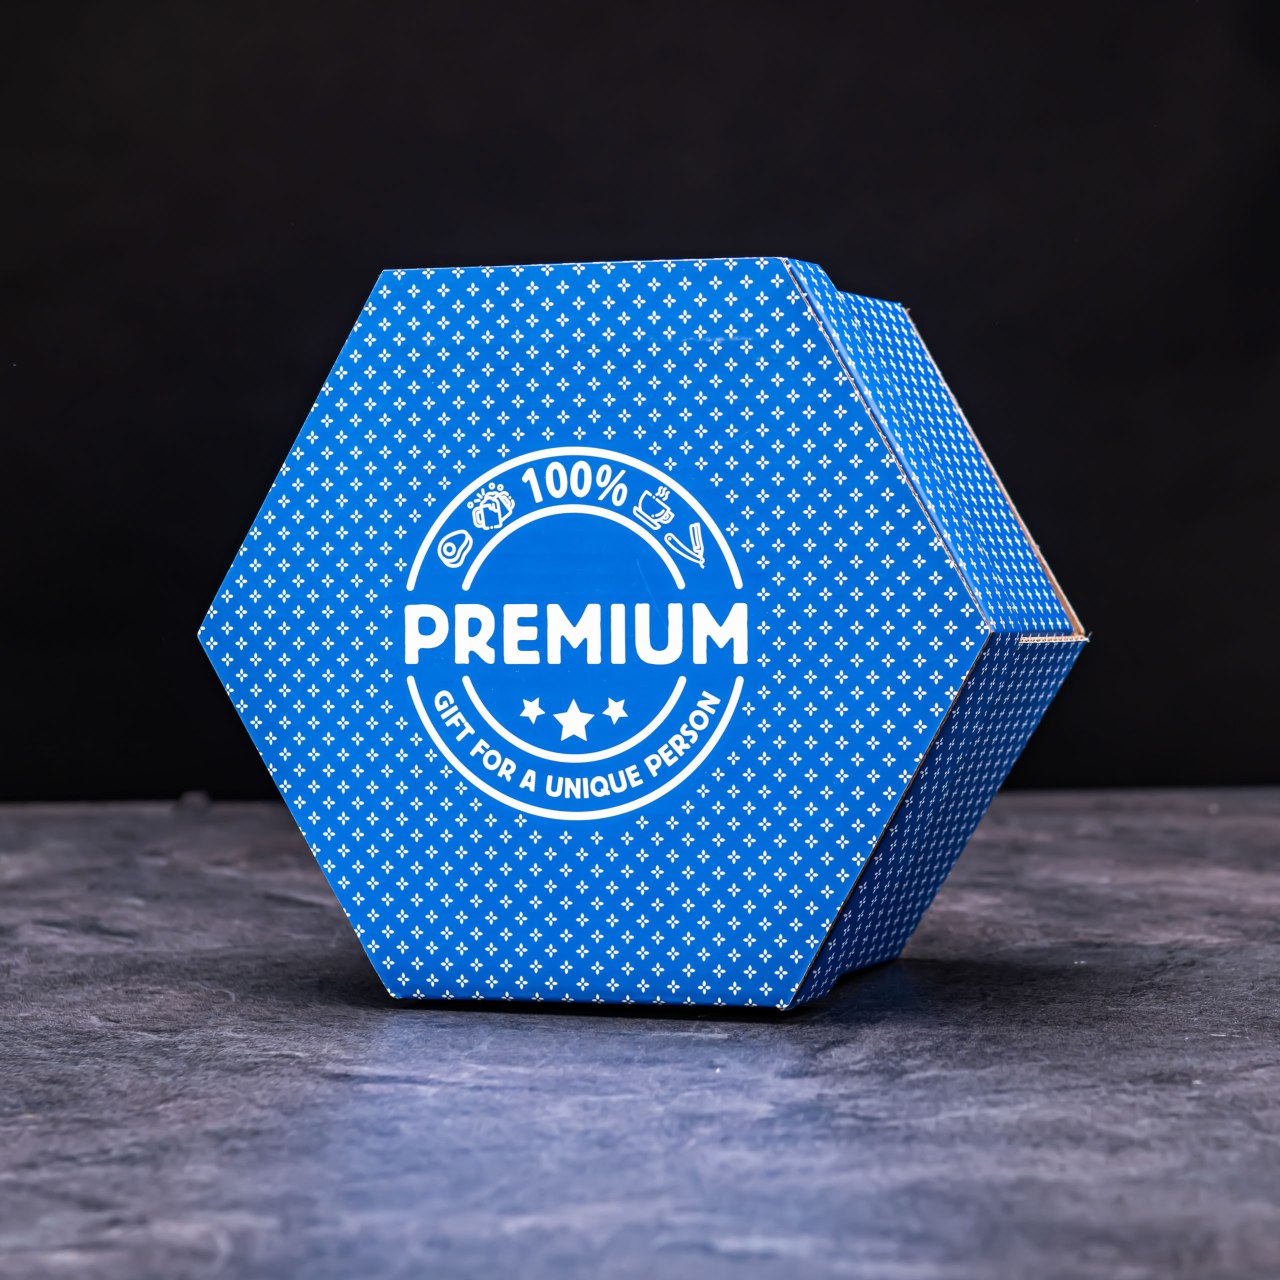 Hexagon plný kvalitních čajů - Modrý